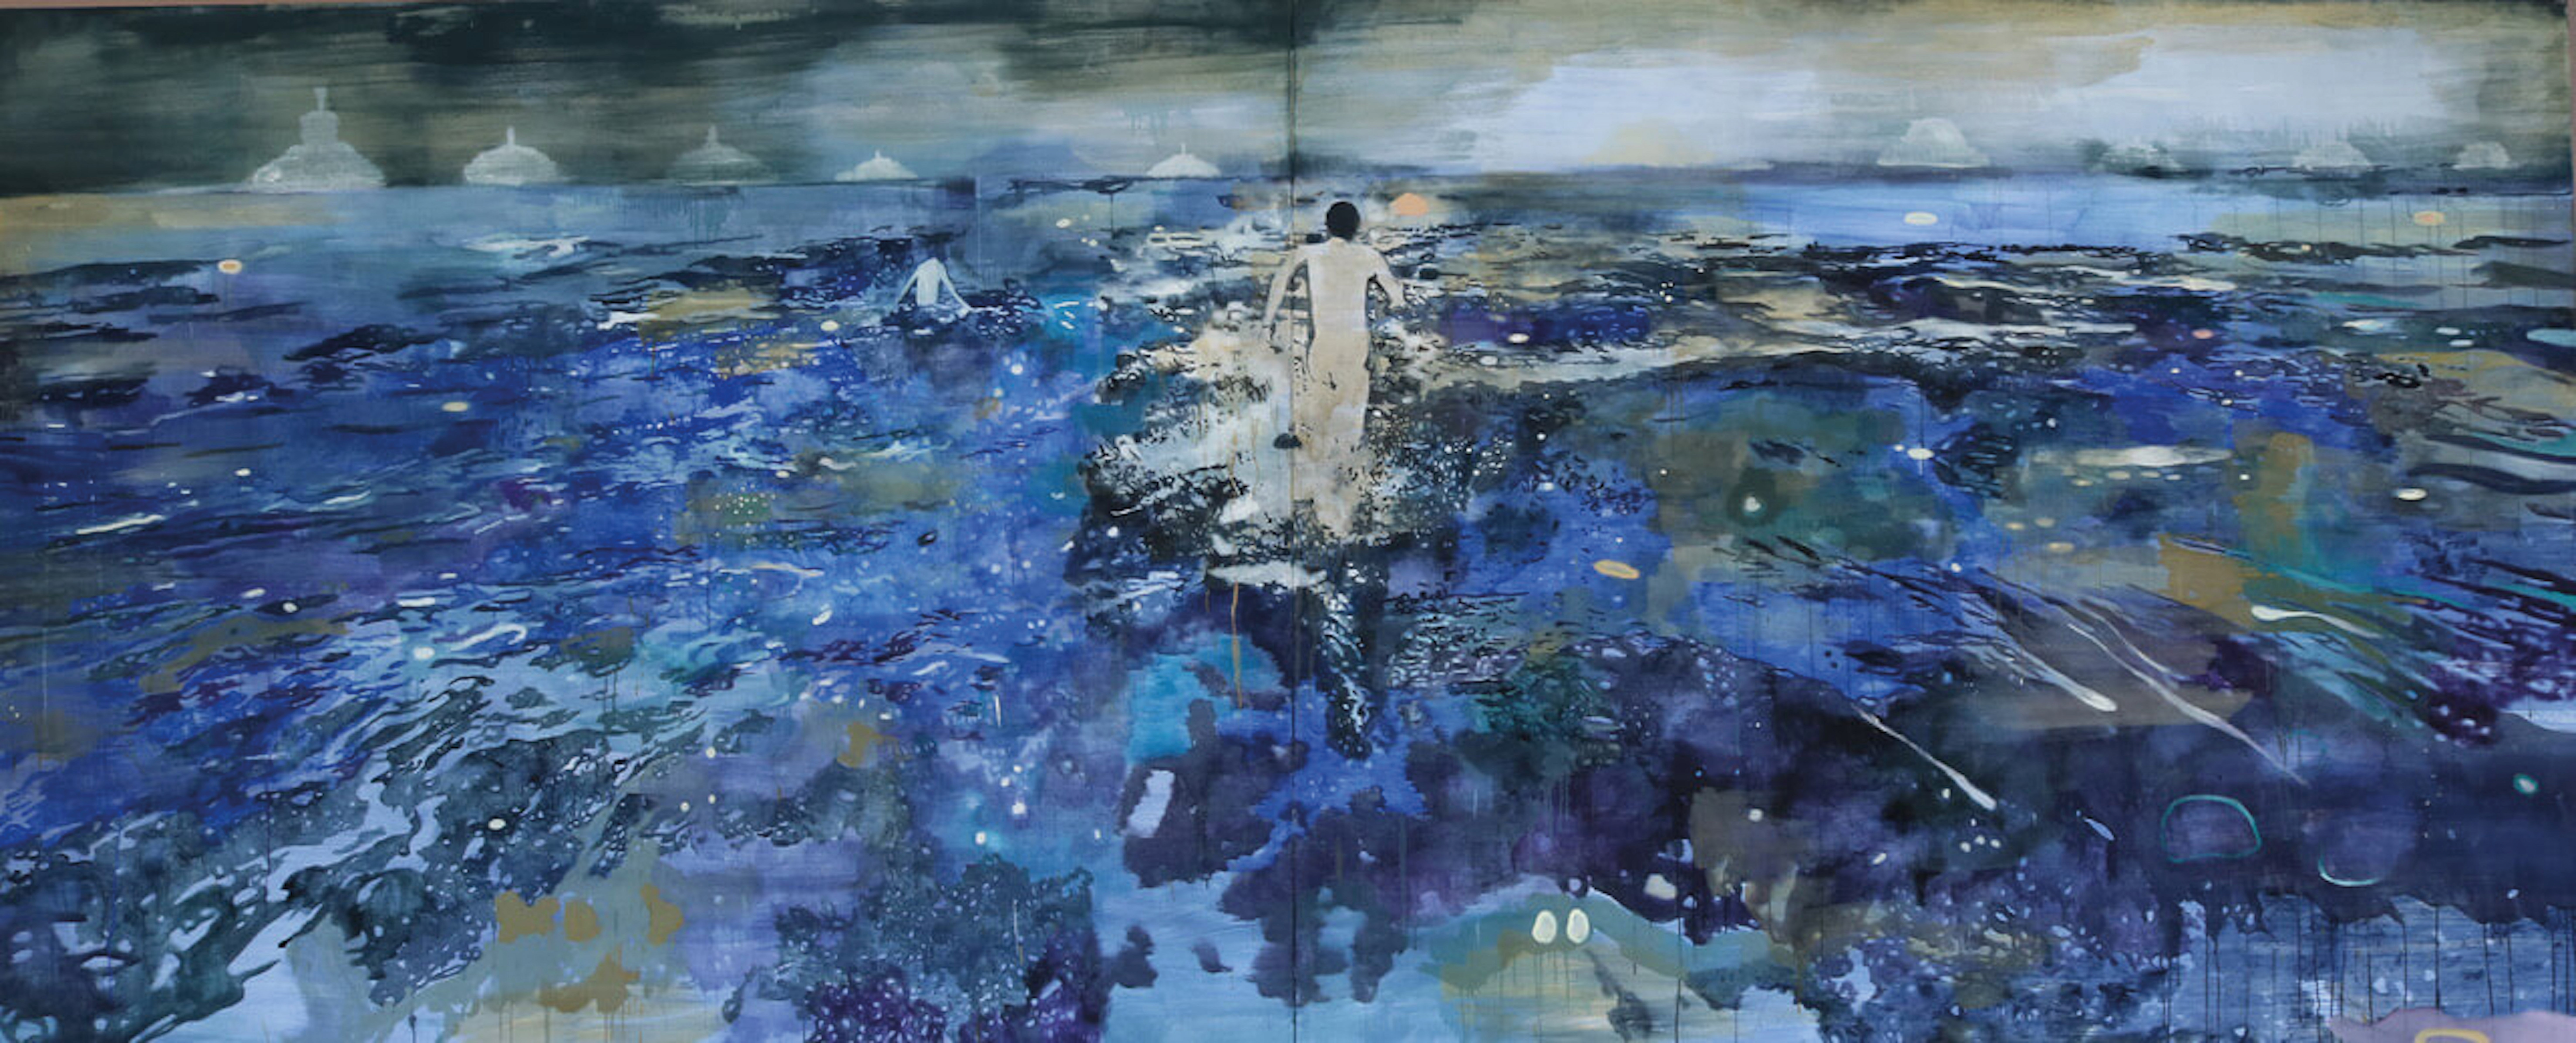 Miriam Vlaming, MANN AUS SEBASTE, 2018, Eitempera auf Leinwand, 200 cm x 480 cm (Diptychon), Preis auf Anfrage, Galerie Cyprian Brenner